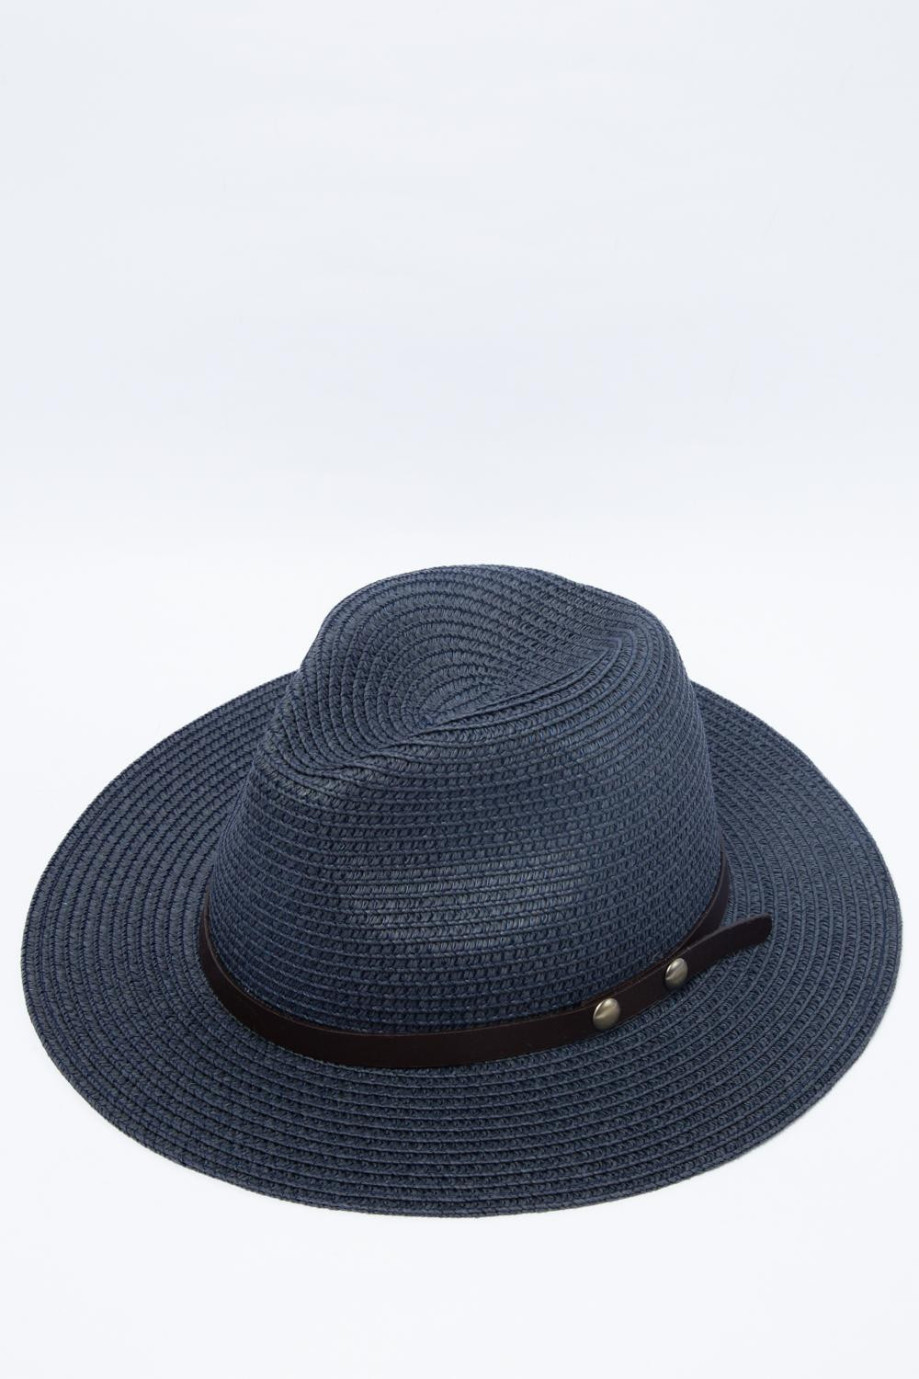 Sombrero de paja azul intenso con ala ancha y lazo decorativo negro